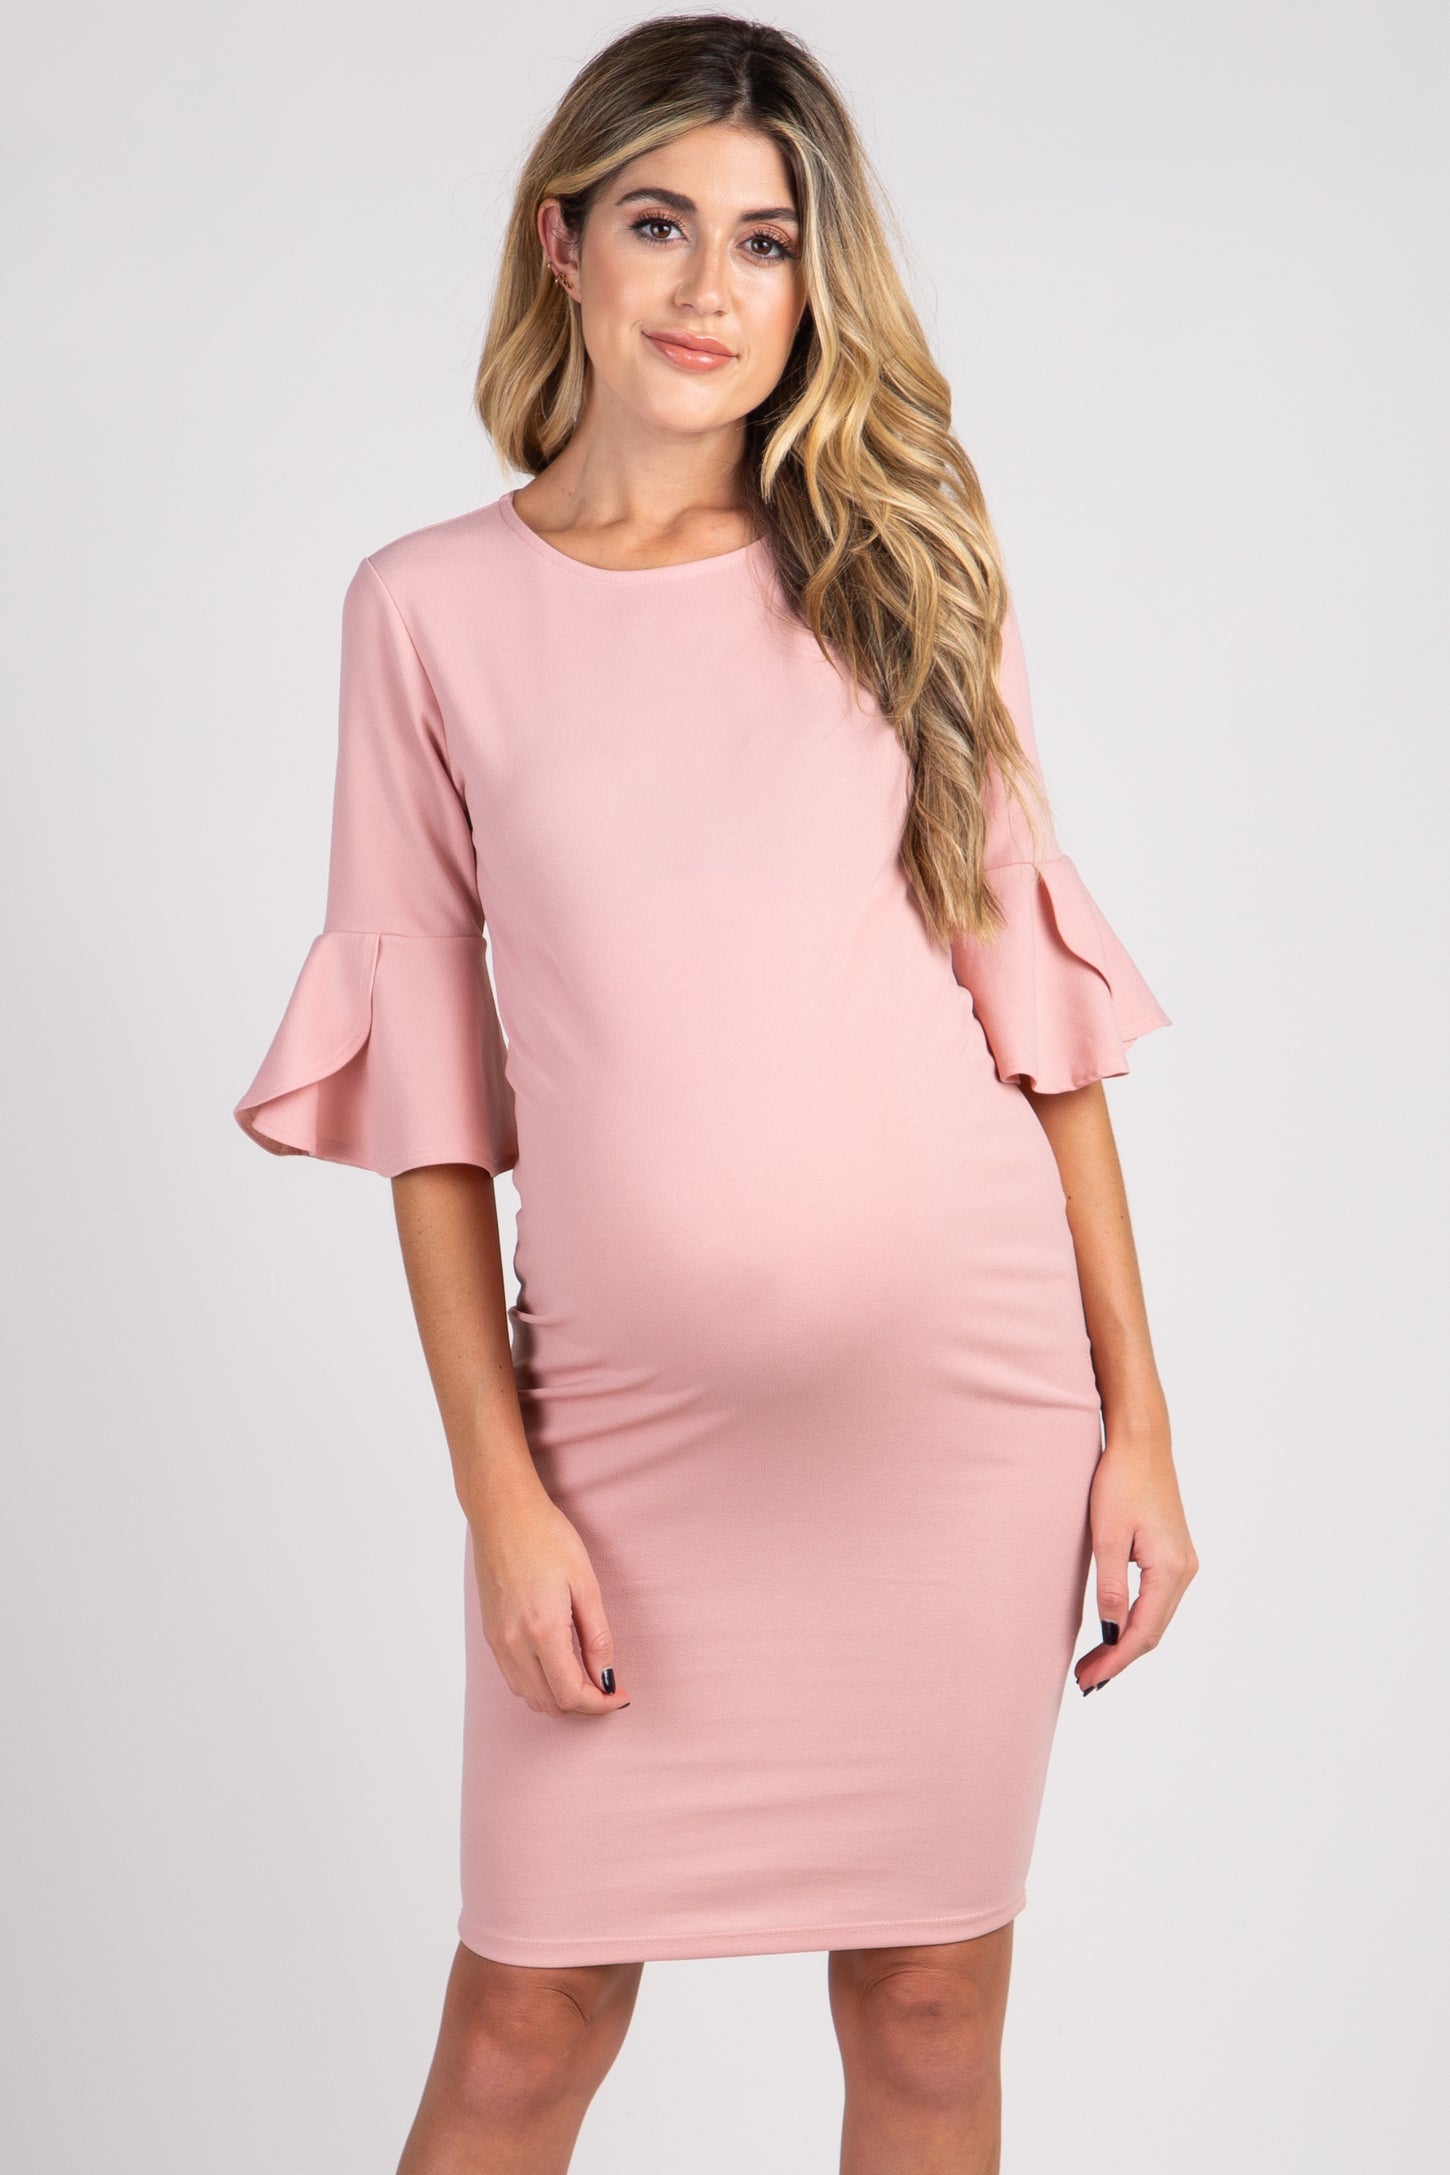 PinkBlush Mauve Fitted Ruffle Sleeve Maternity Dress